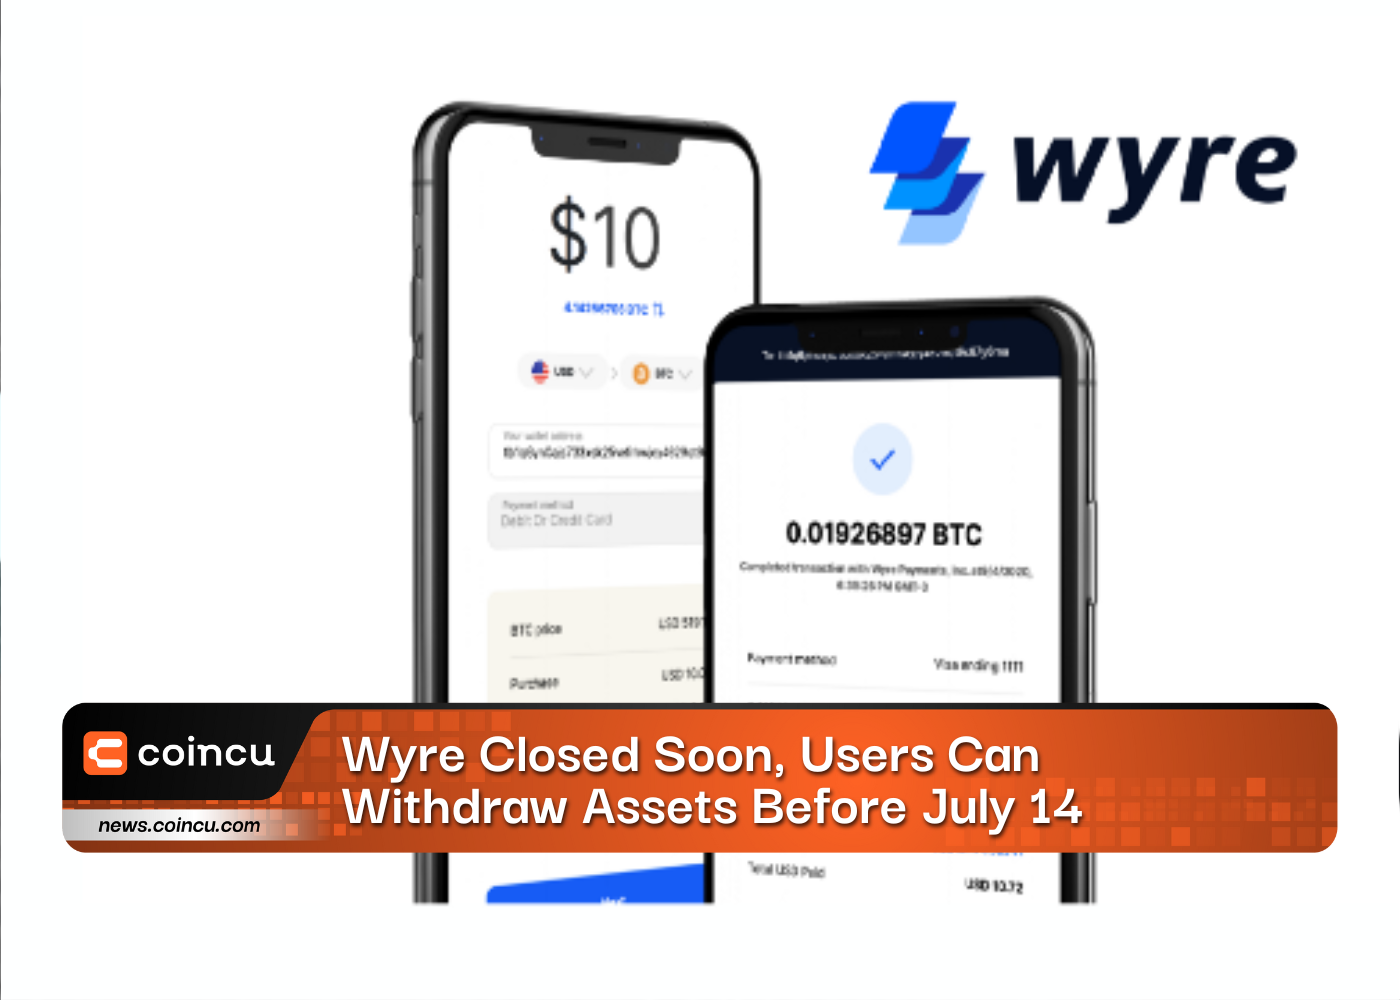 Wyre bientôt fermé, les utilisateurs peuvent retirer des actifs avant le 14 juillet